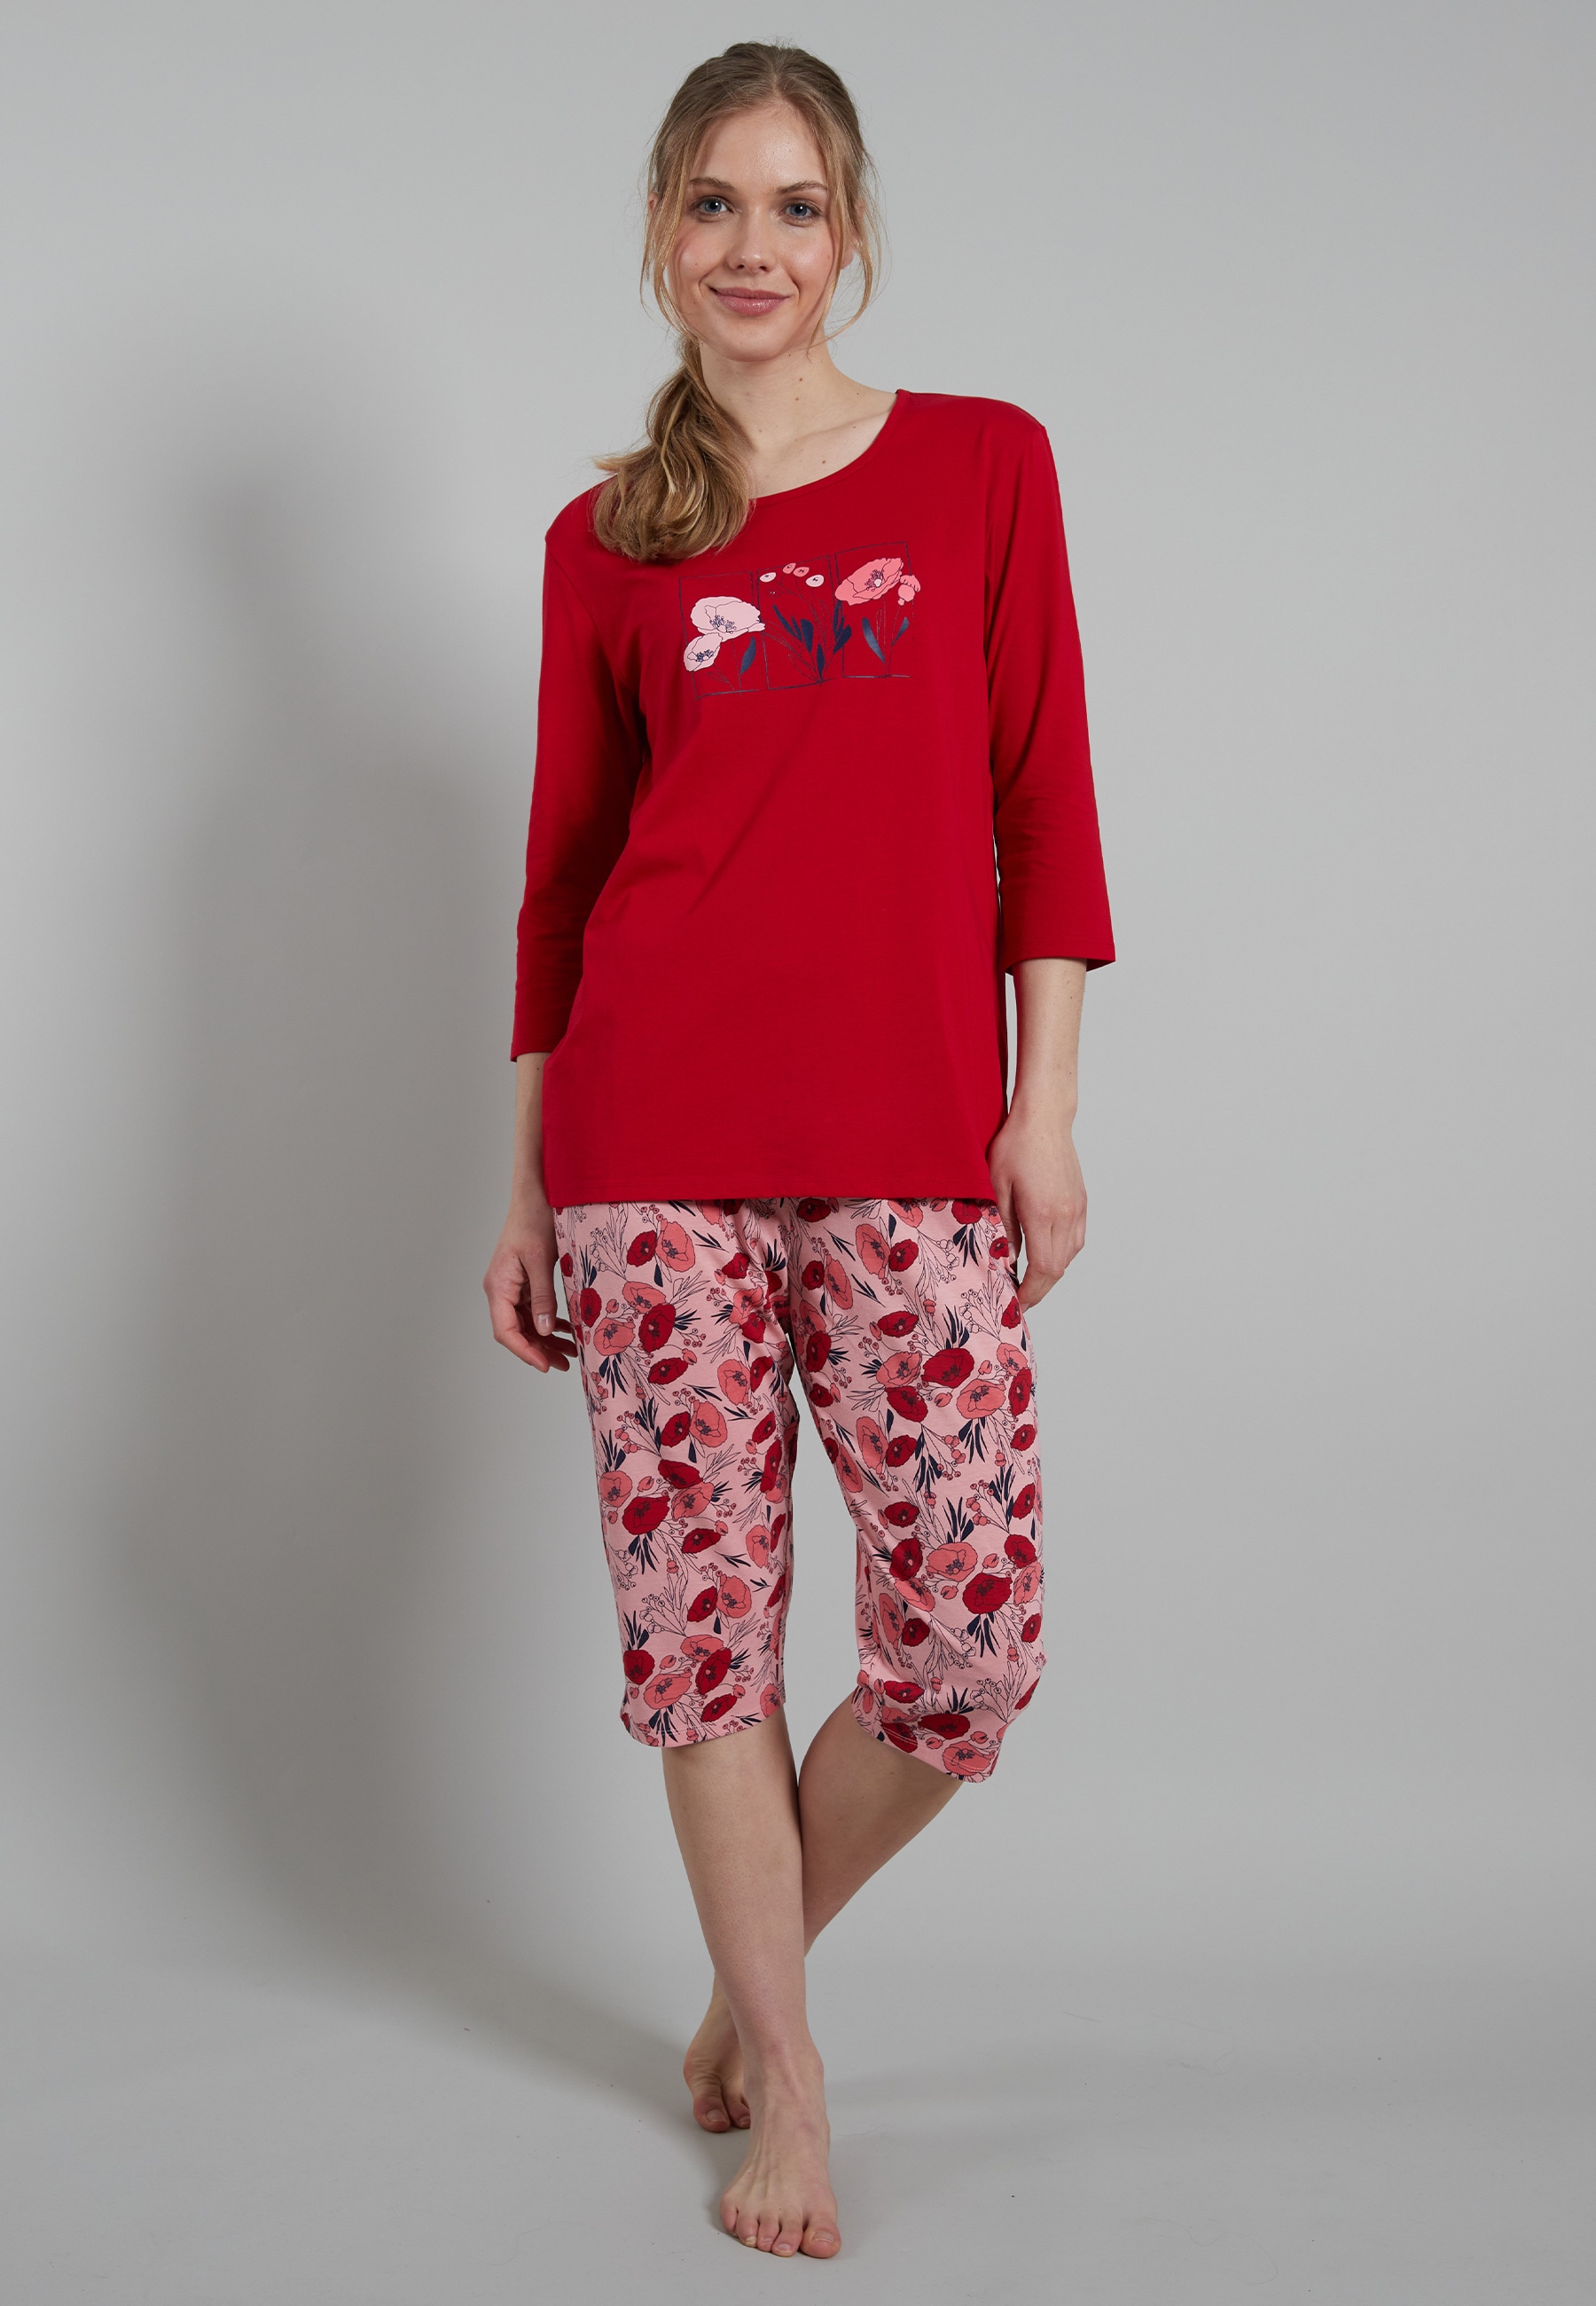 Pyjama, ein echter Hingucker mit verspieltem Print und passender Hose